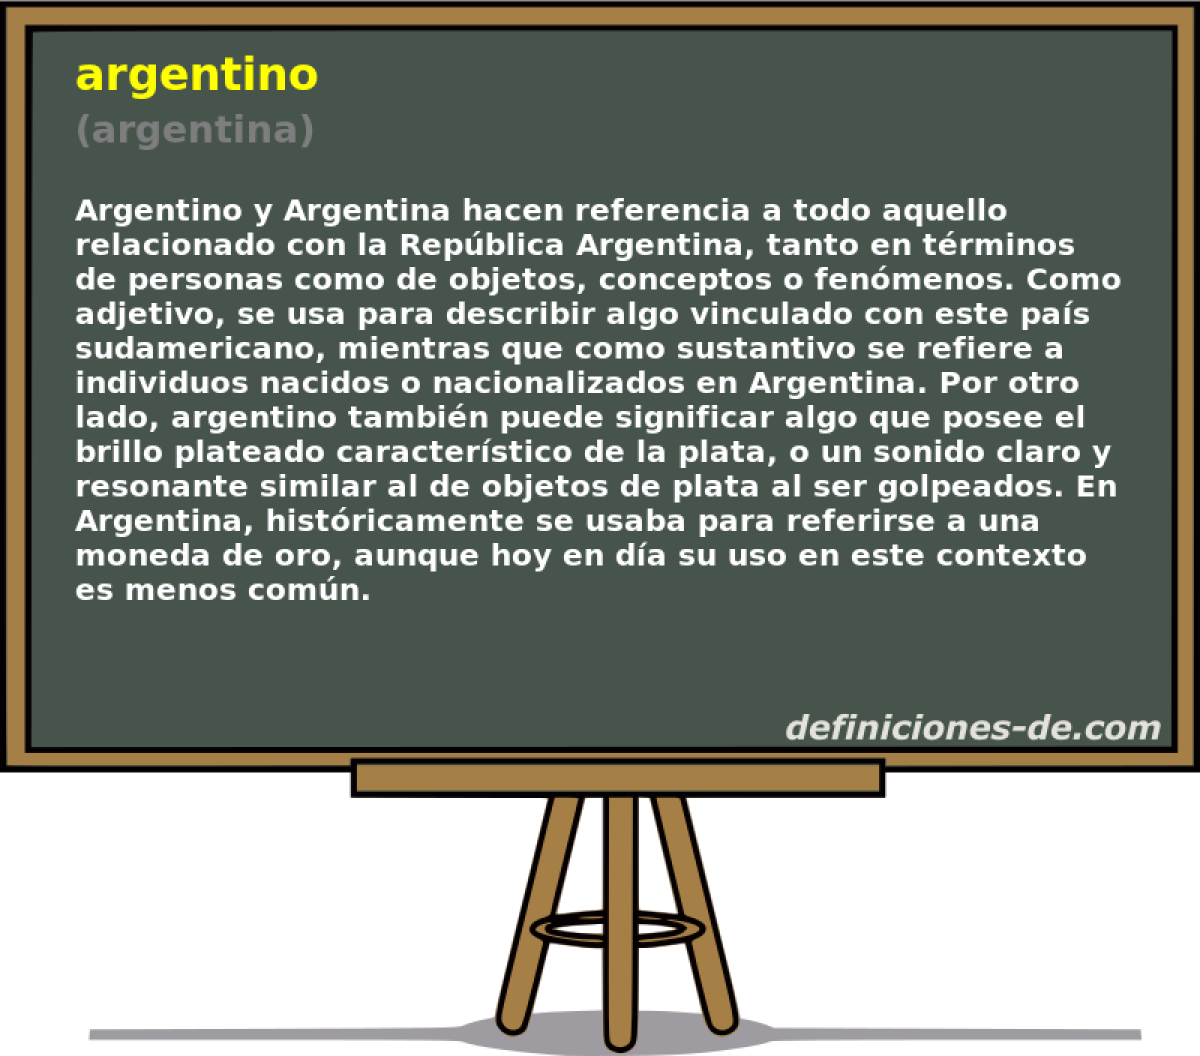 argentino (argentina)